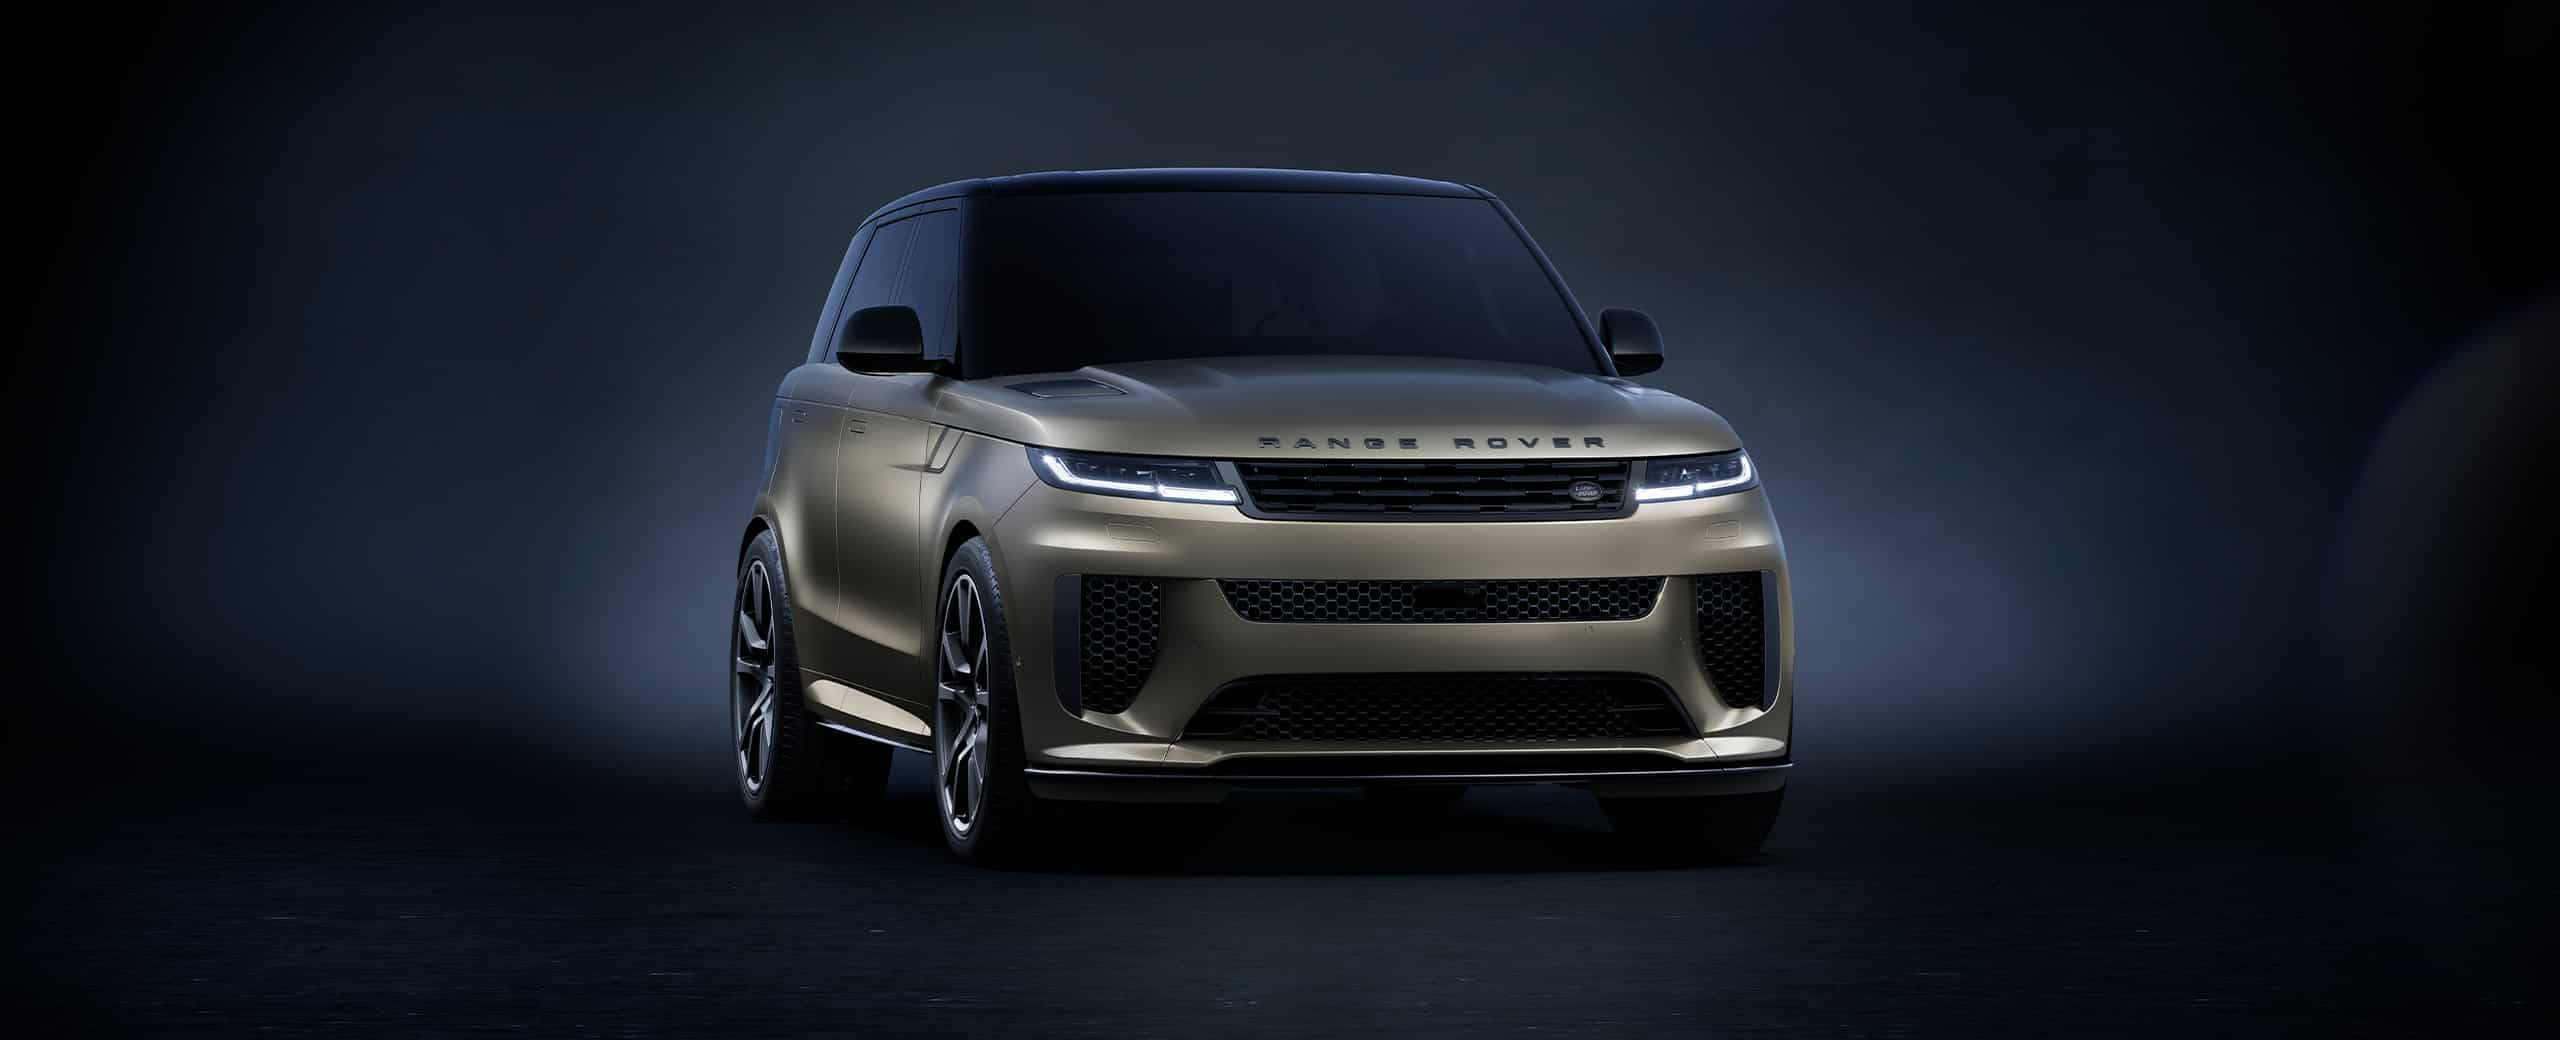 Ce qu'il faut savoir sur le Land Rover Discovery Sport 2022